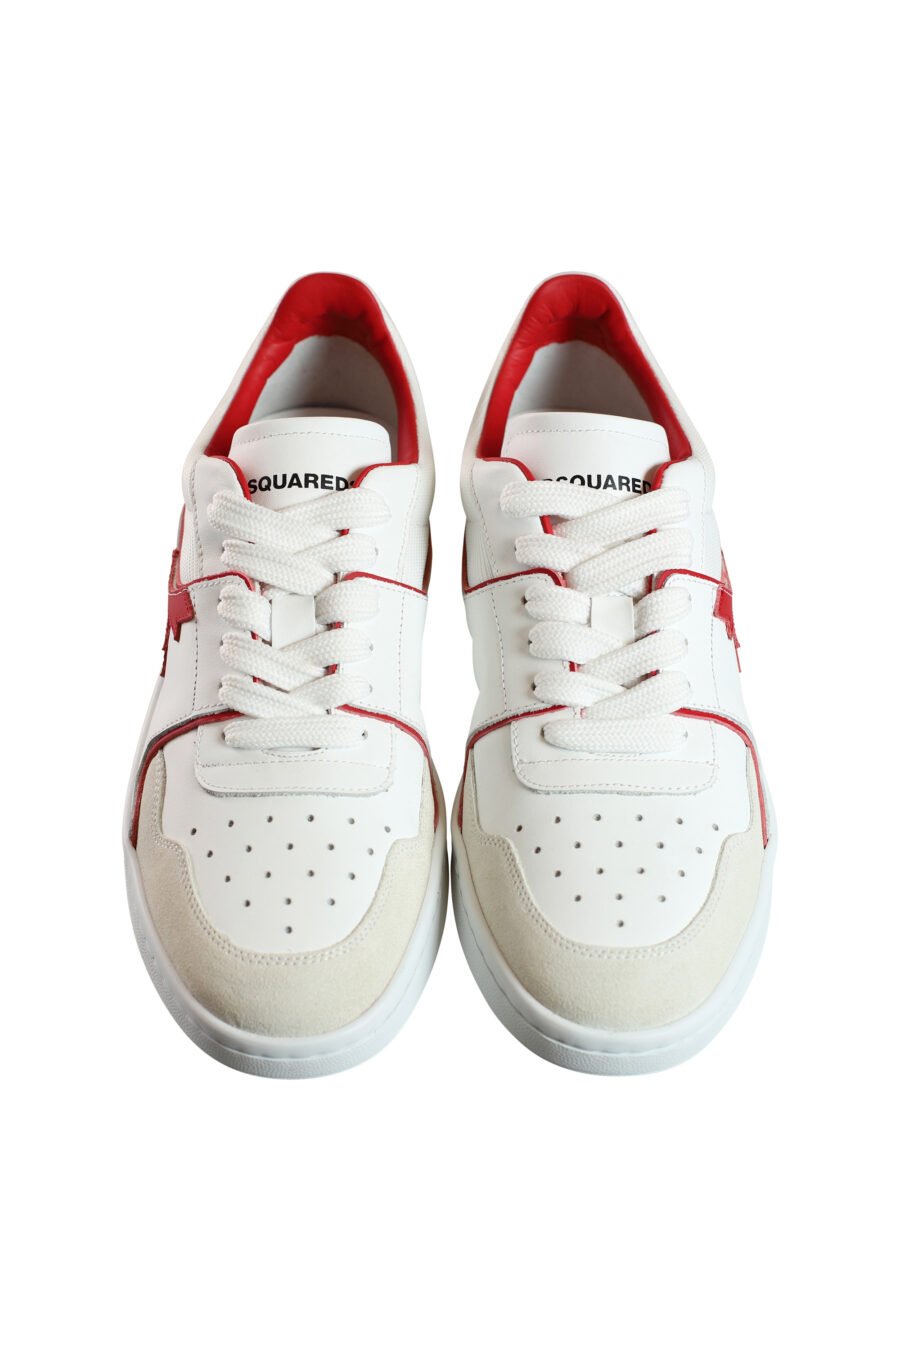 Zapatillas blancas mix con logo y detalles en rojo - 8055777188194 6